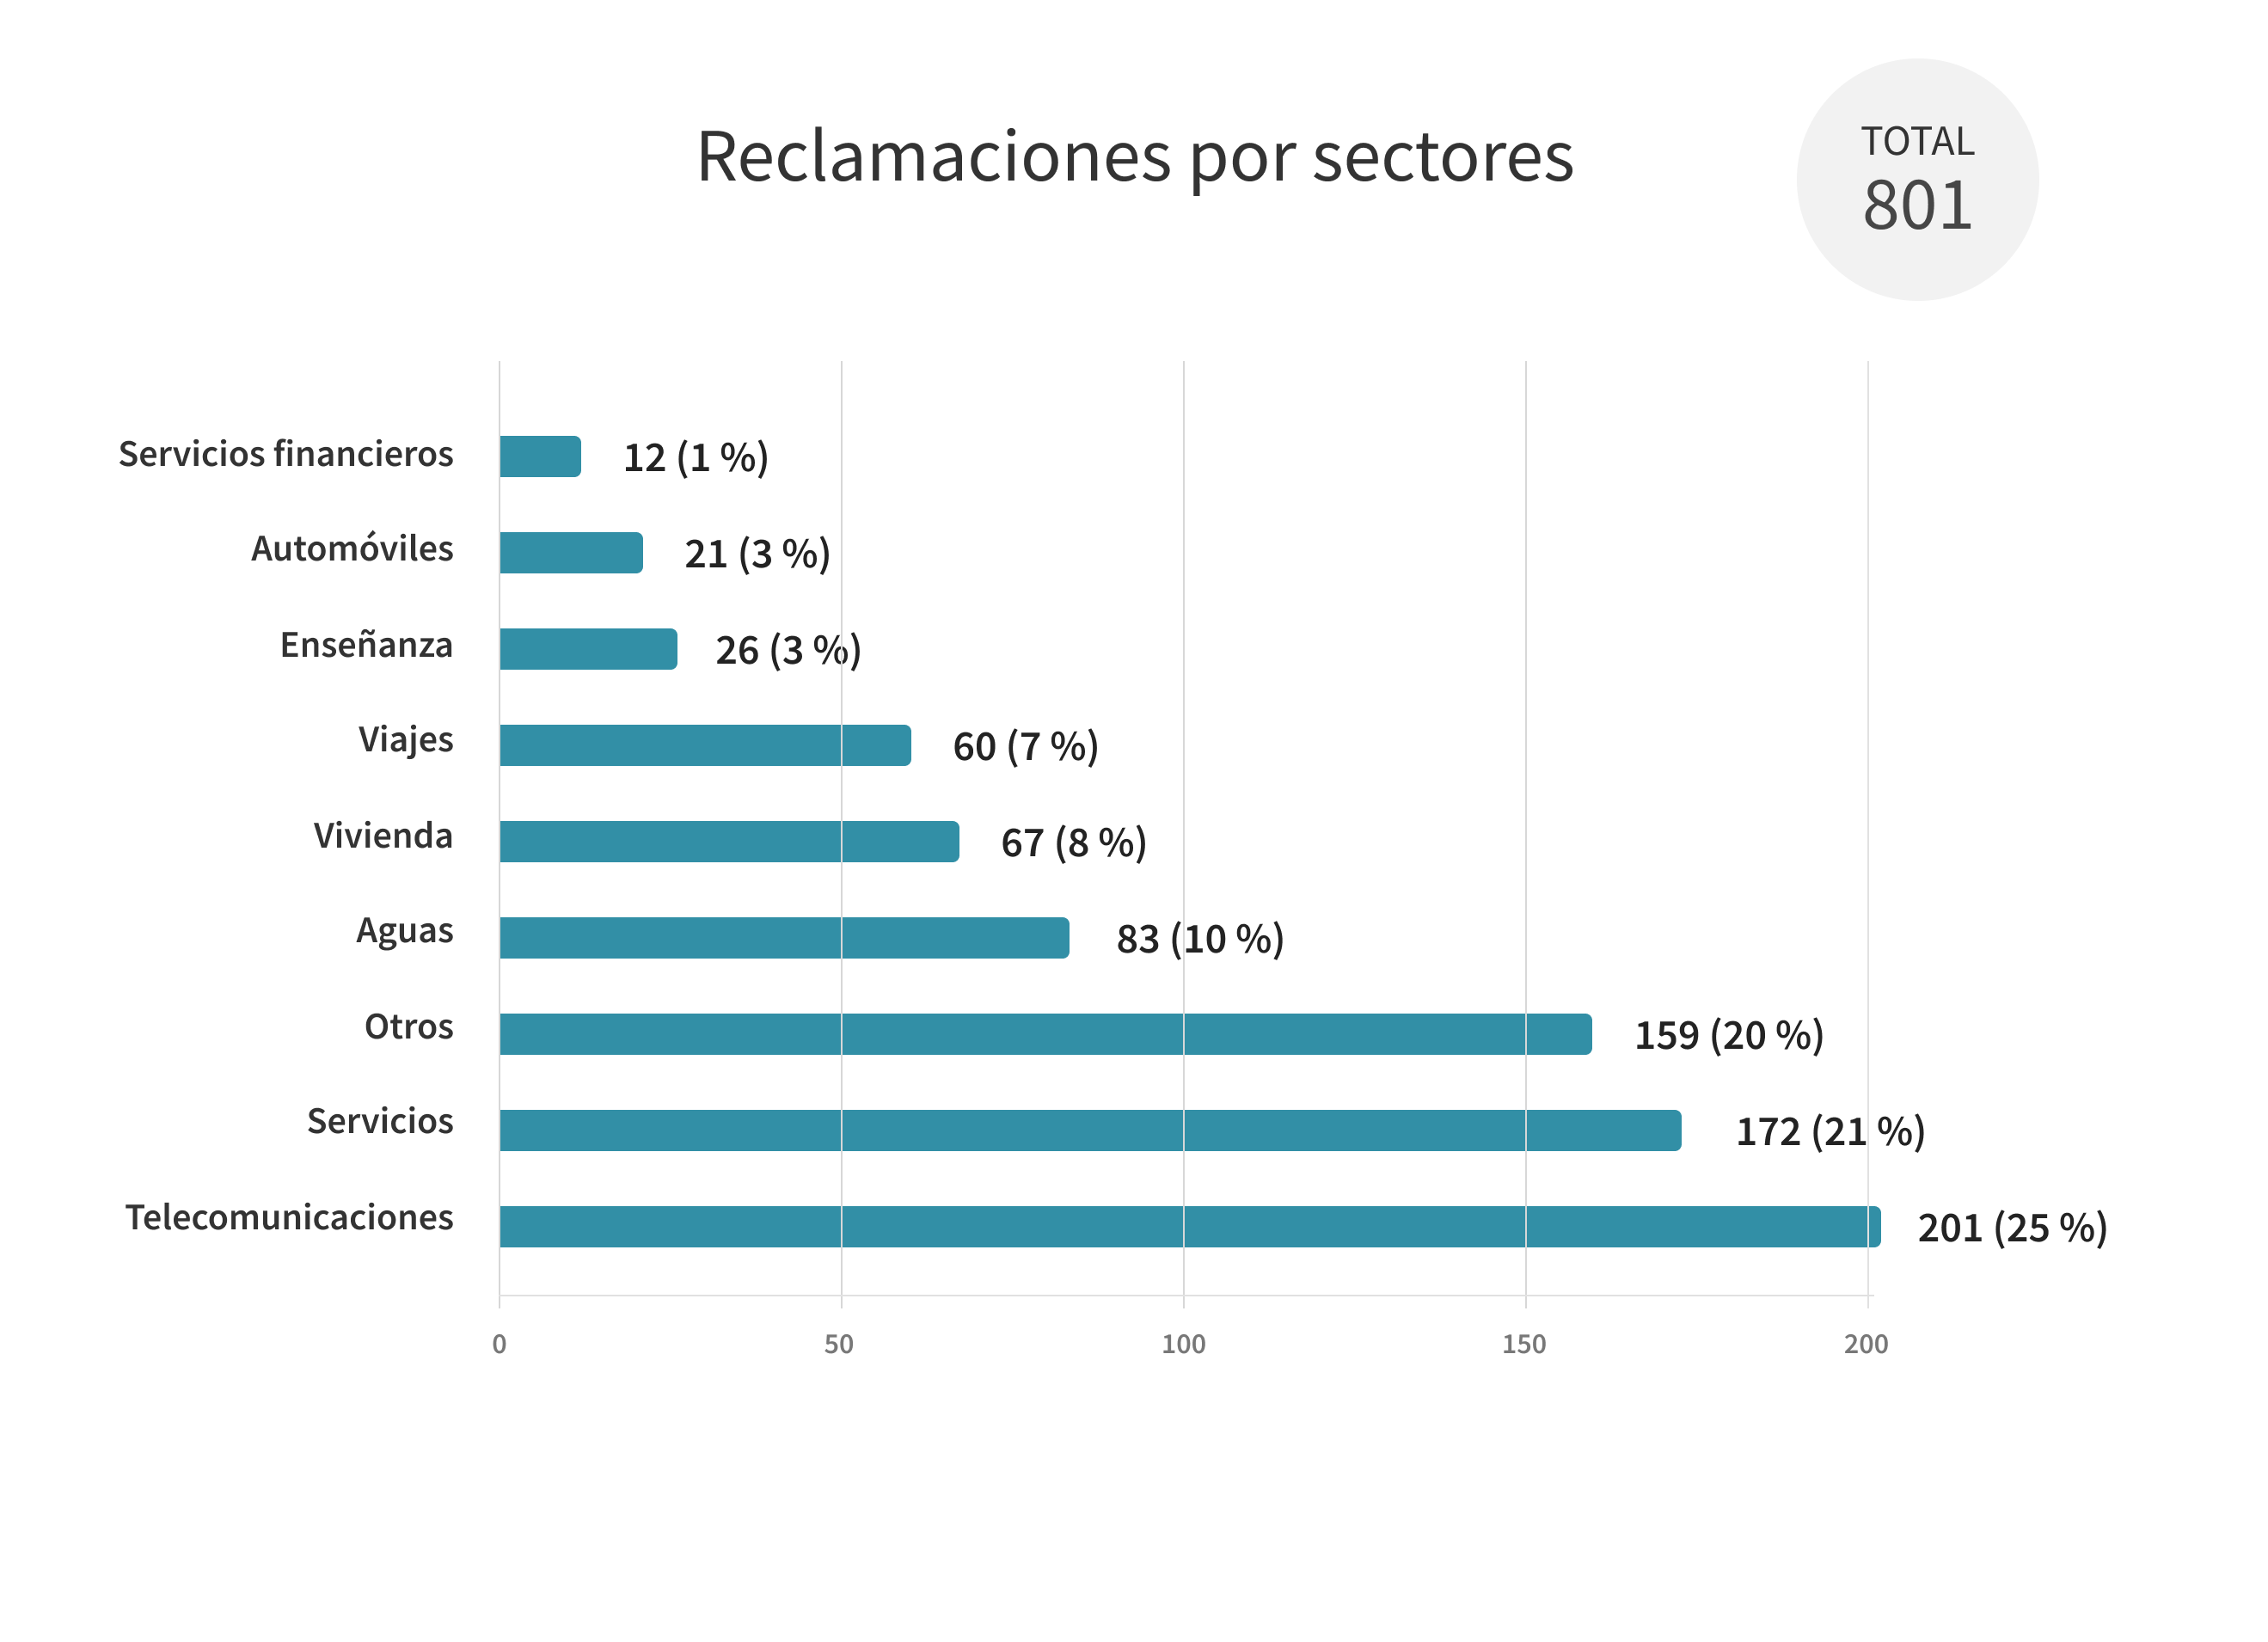 Reclamaciones por sectores. Total: 801. Servicios financieros: 12 (1 %), Automóviles: 21 (3 %), Enseñanza: 26 (3 %), Viajes: 60 (7 %), Vivienda: 67 (8 %), Aguas: 83 (10%), Otros: 159 (20 %), Servicios: 172 (21 %), Telecomunicaciones: 201 (25 %)